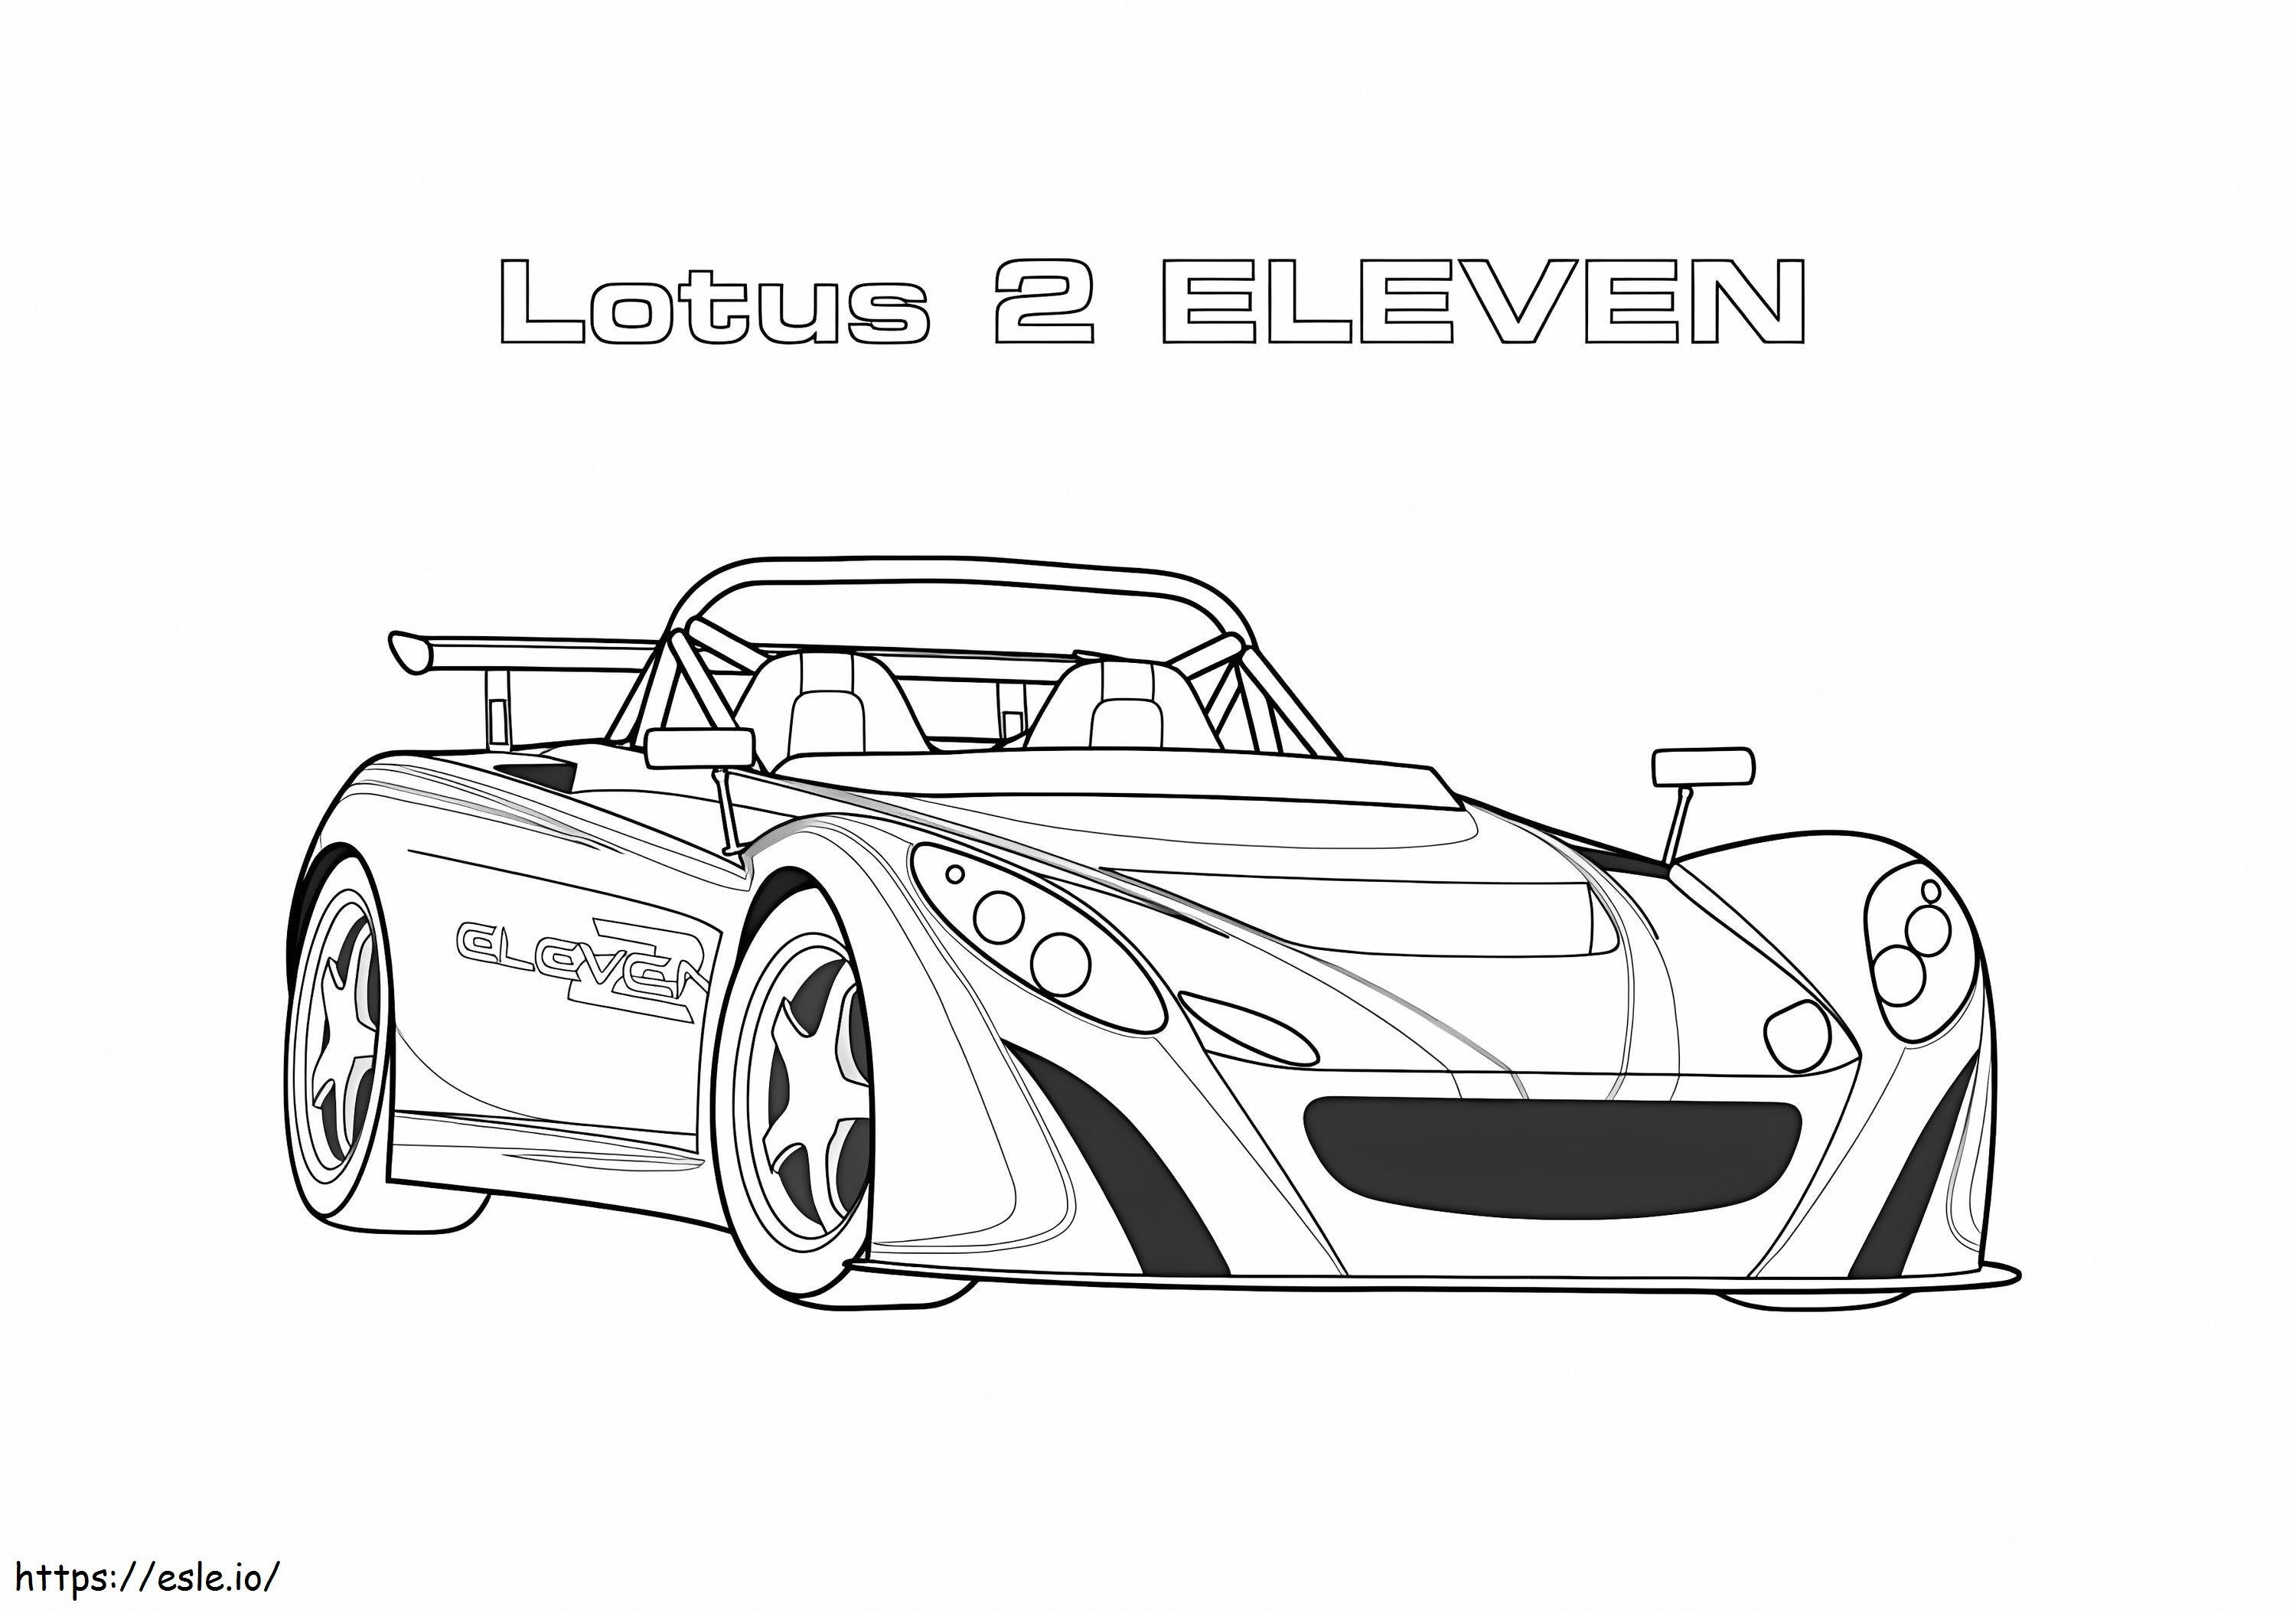 Mobil Balap Lotus 2 Eleven Gambar Mewarnai